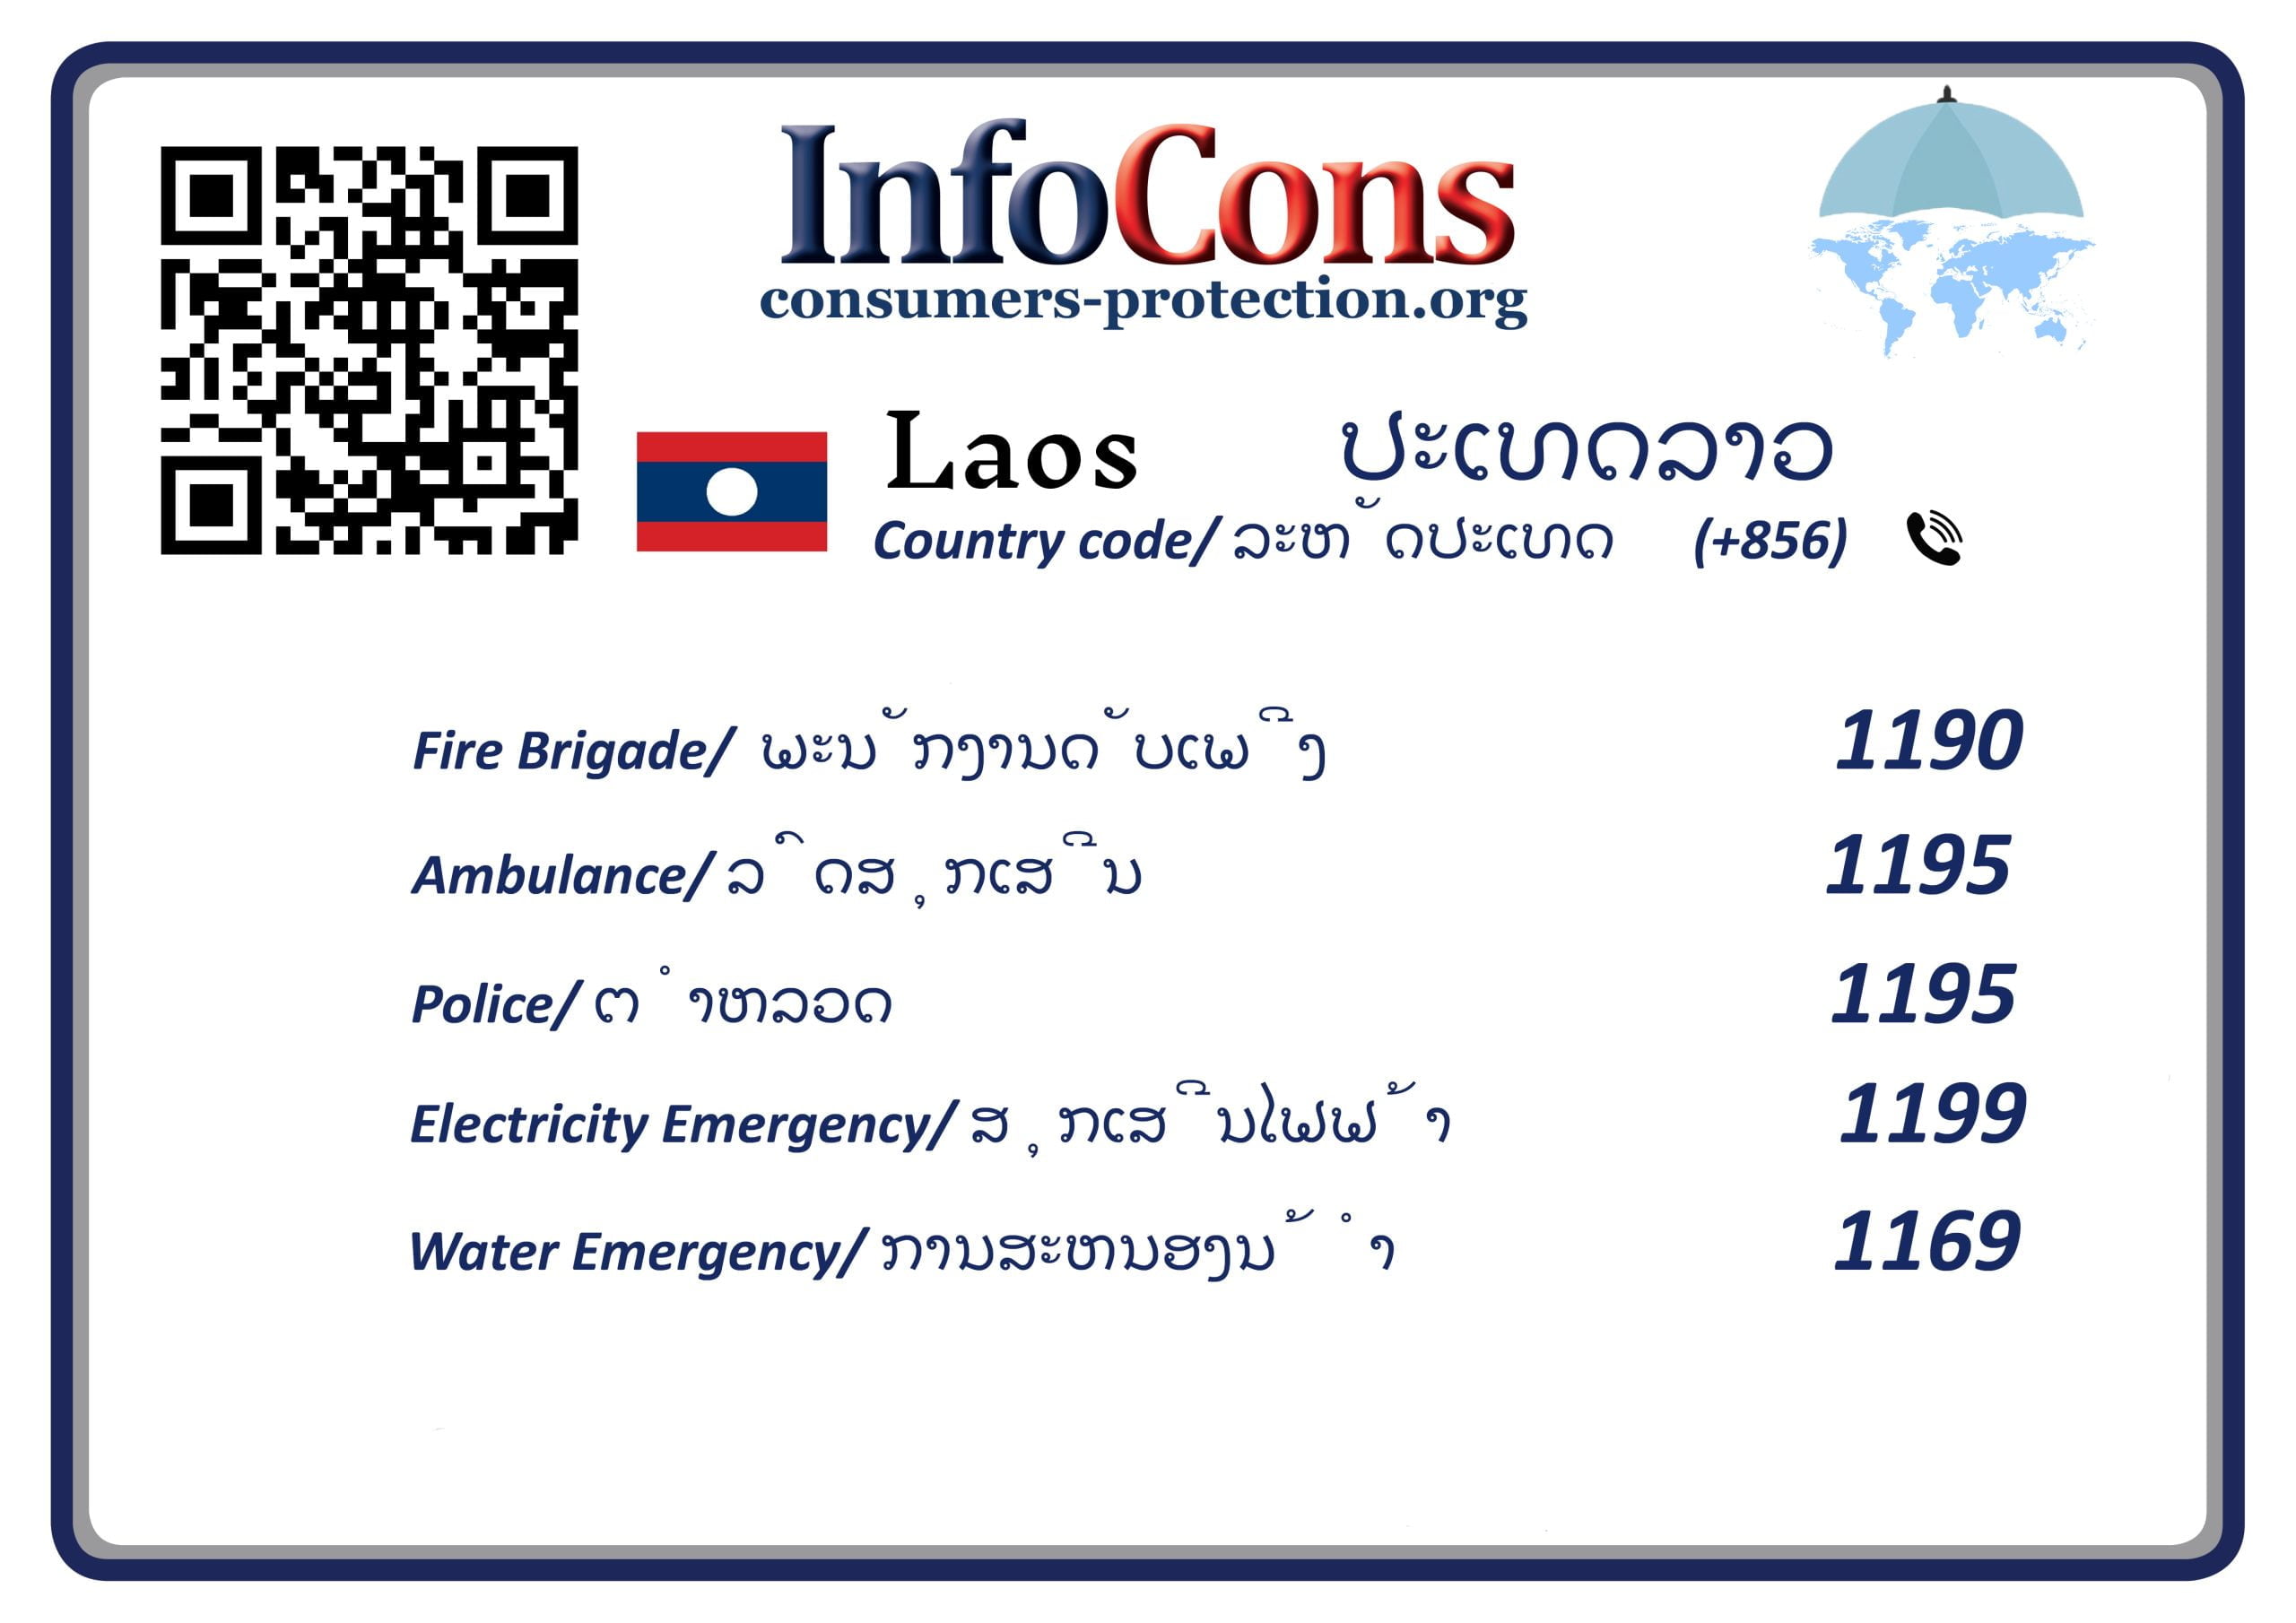 ການປົກປ້ອງຜູ້ບໍລິໂພກປະເທດລາວ - Consumers Protection Laos